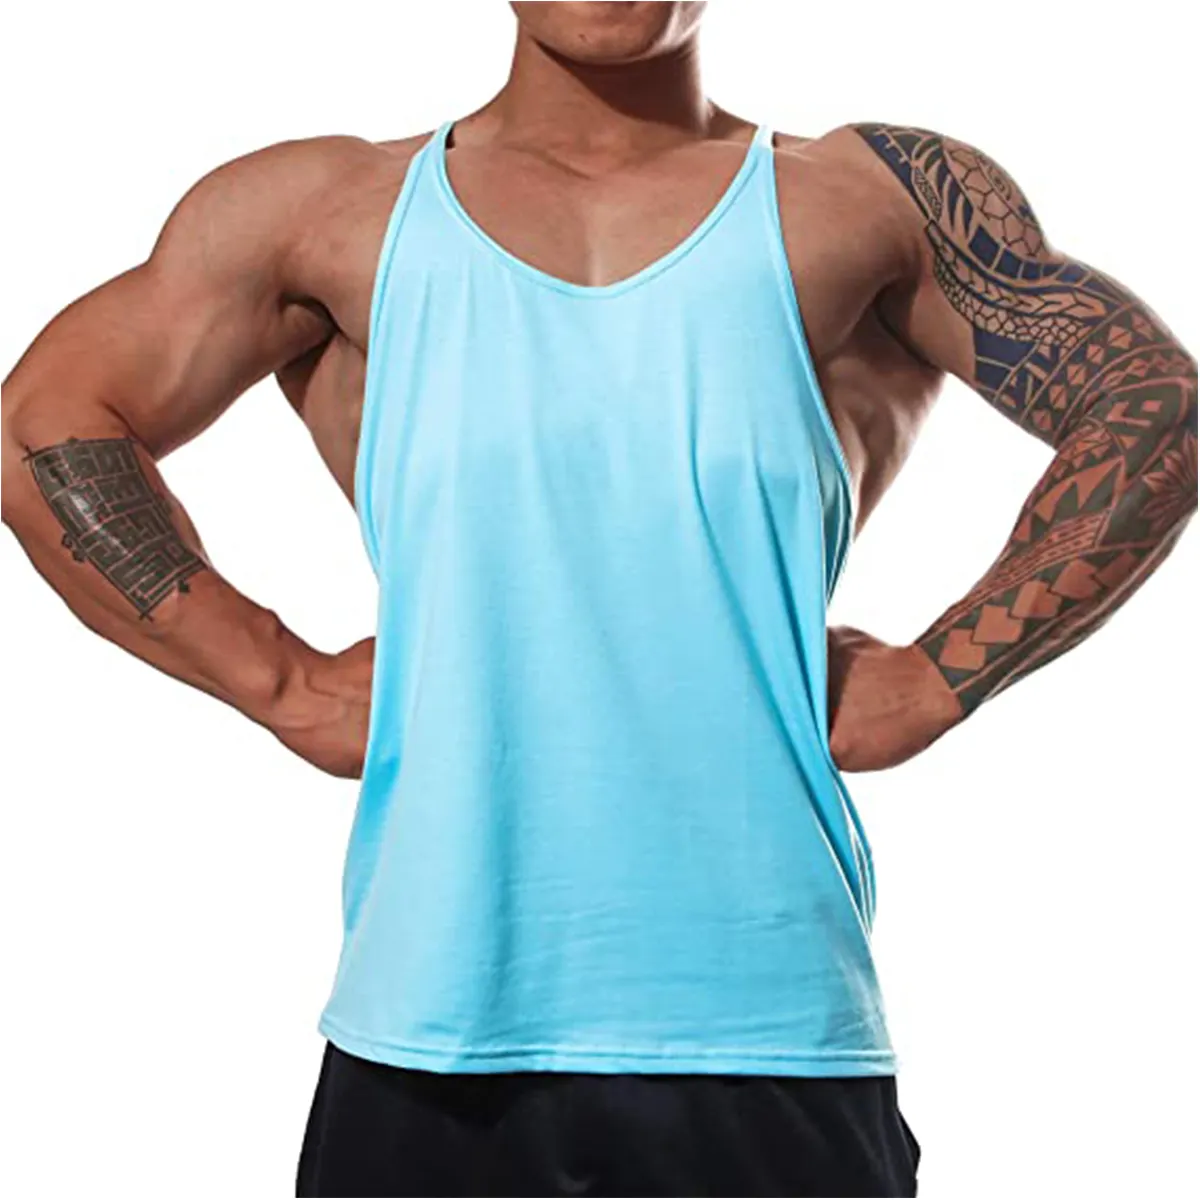 Camiseta sem mangas masculina, camisa fitness de algodão para musculação e treino, roupa esportiva singlet